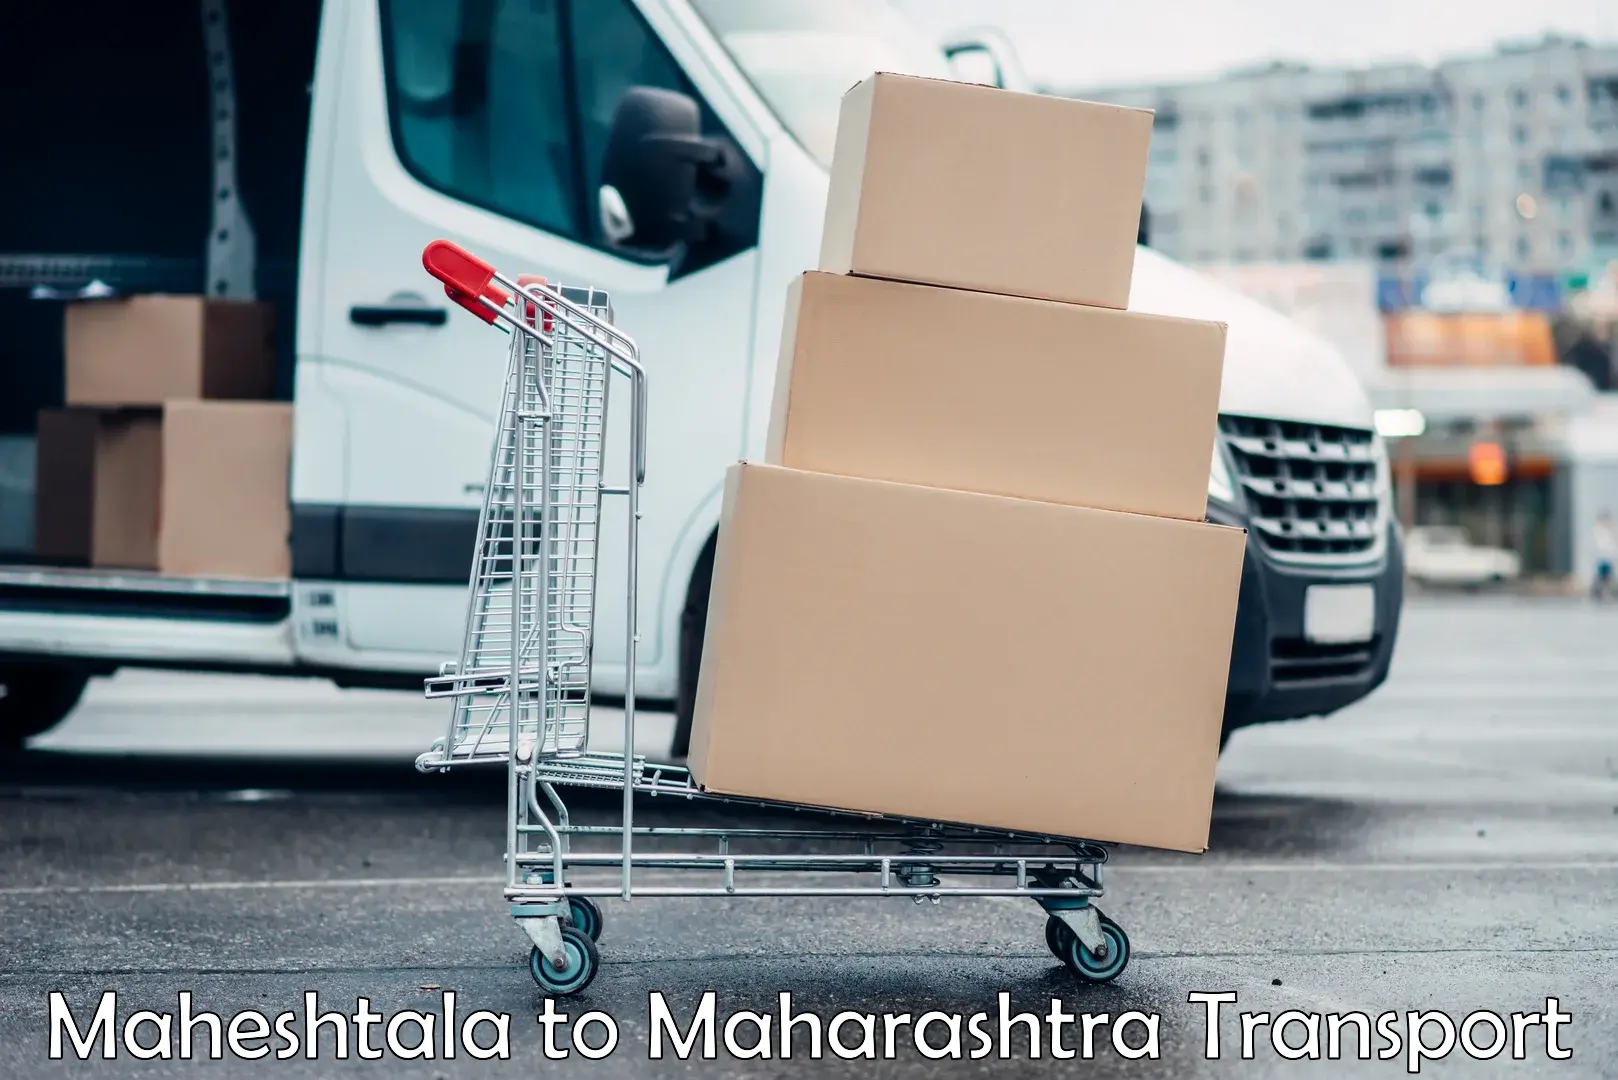 Cargo transportation services in Maheshtala to IIIT Pune